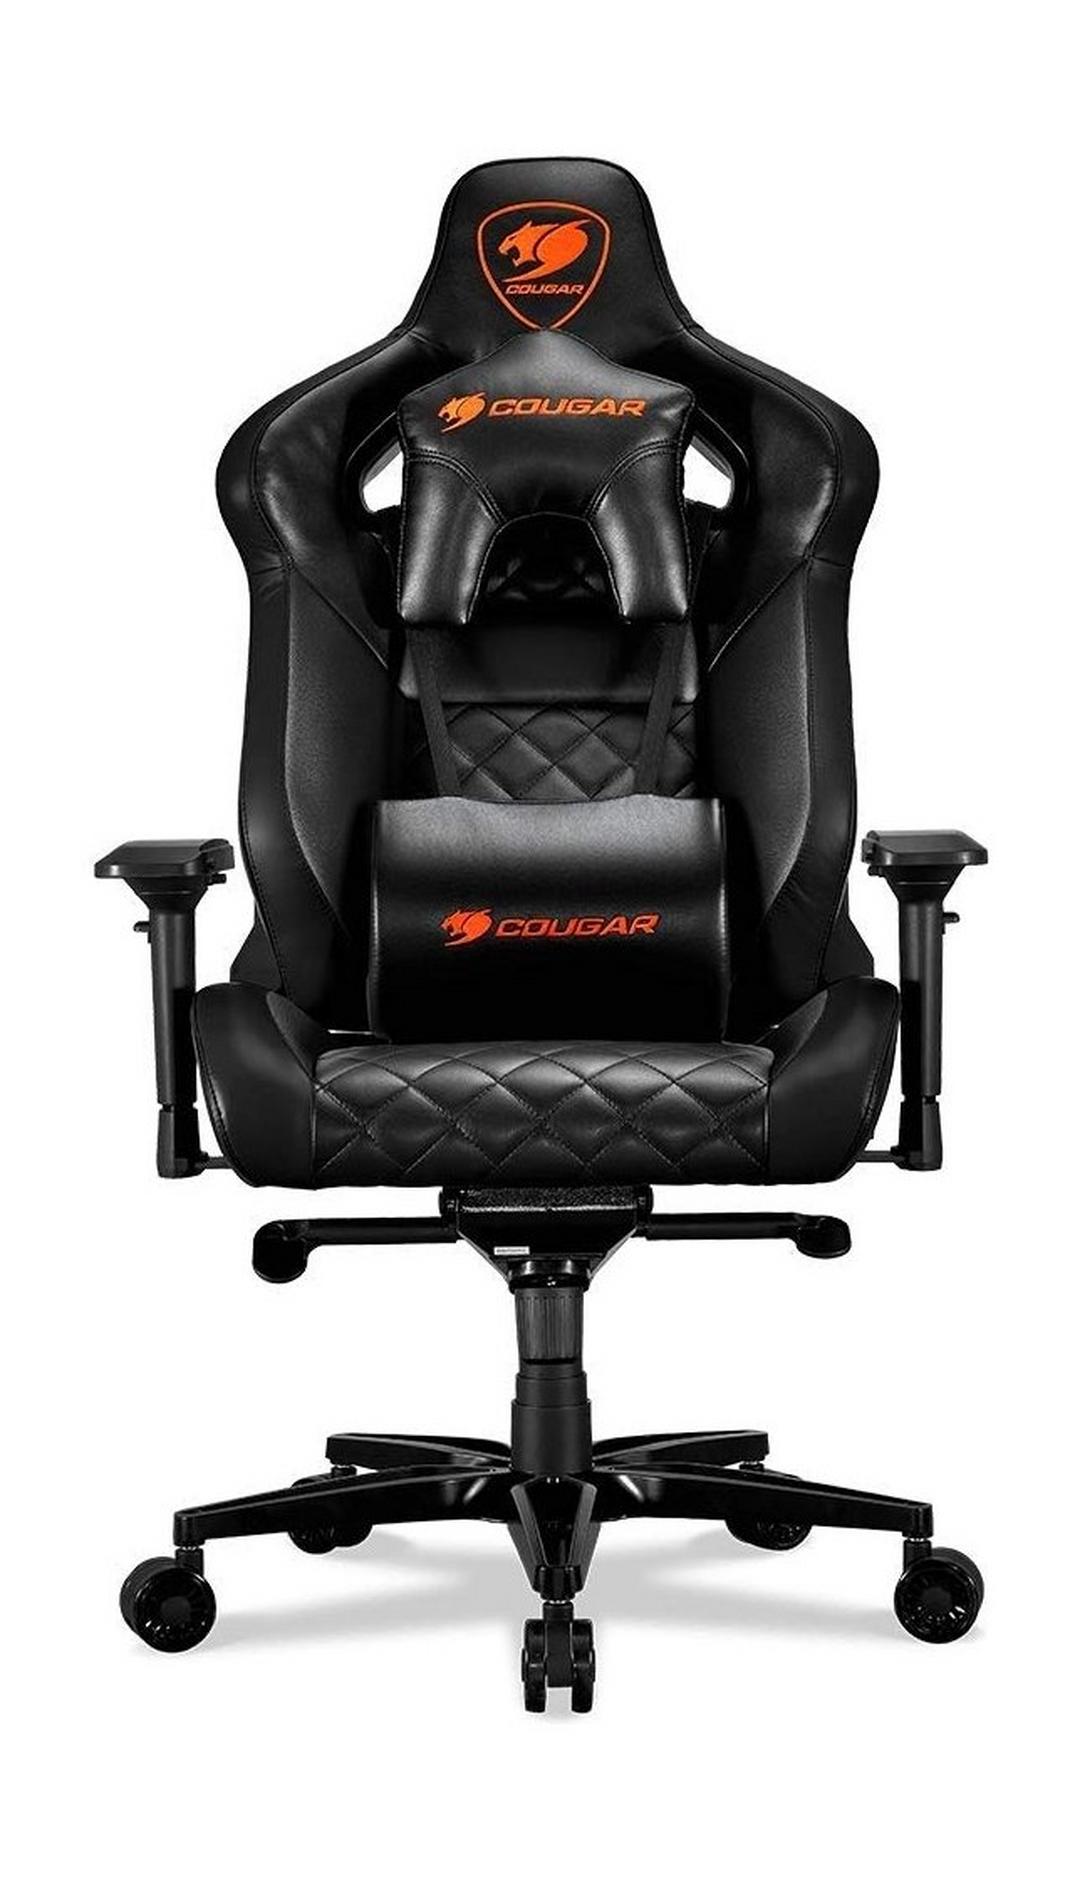 Cougar Armor Titan Ultimate Gaming Chair - Black